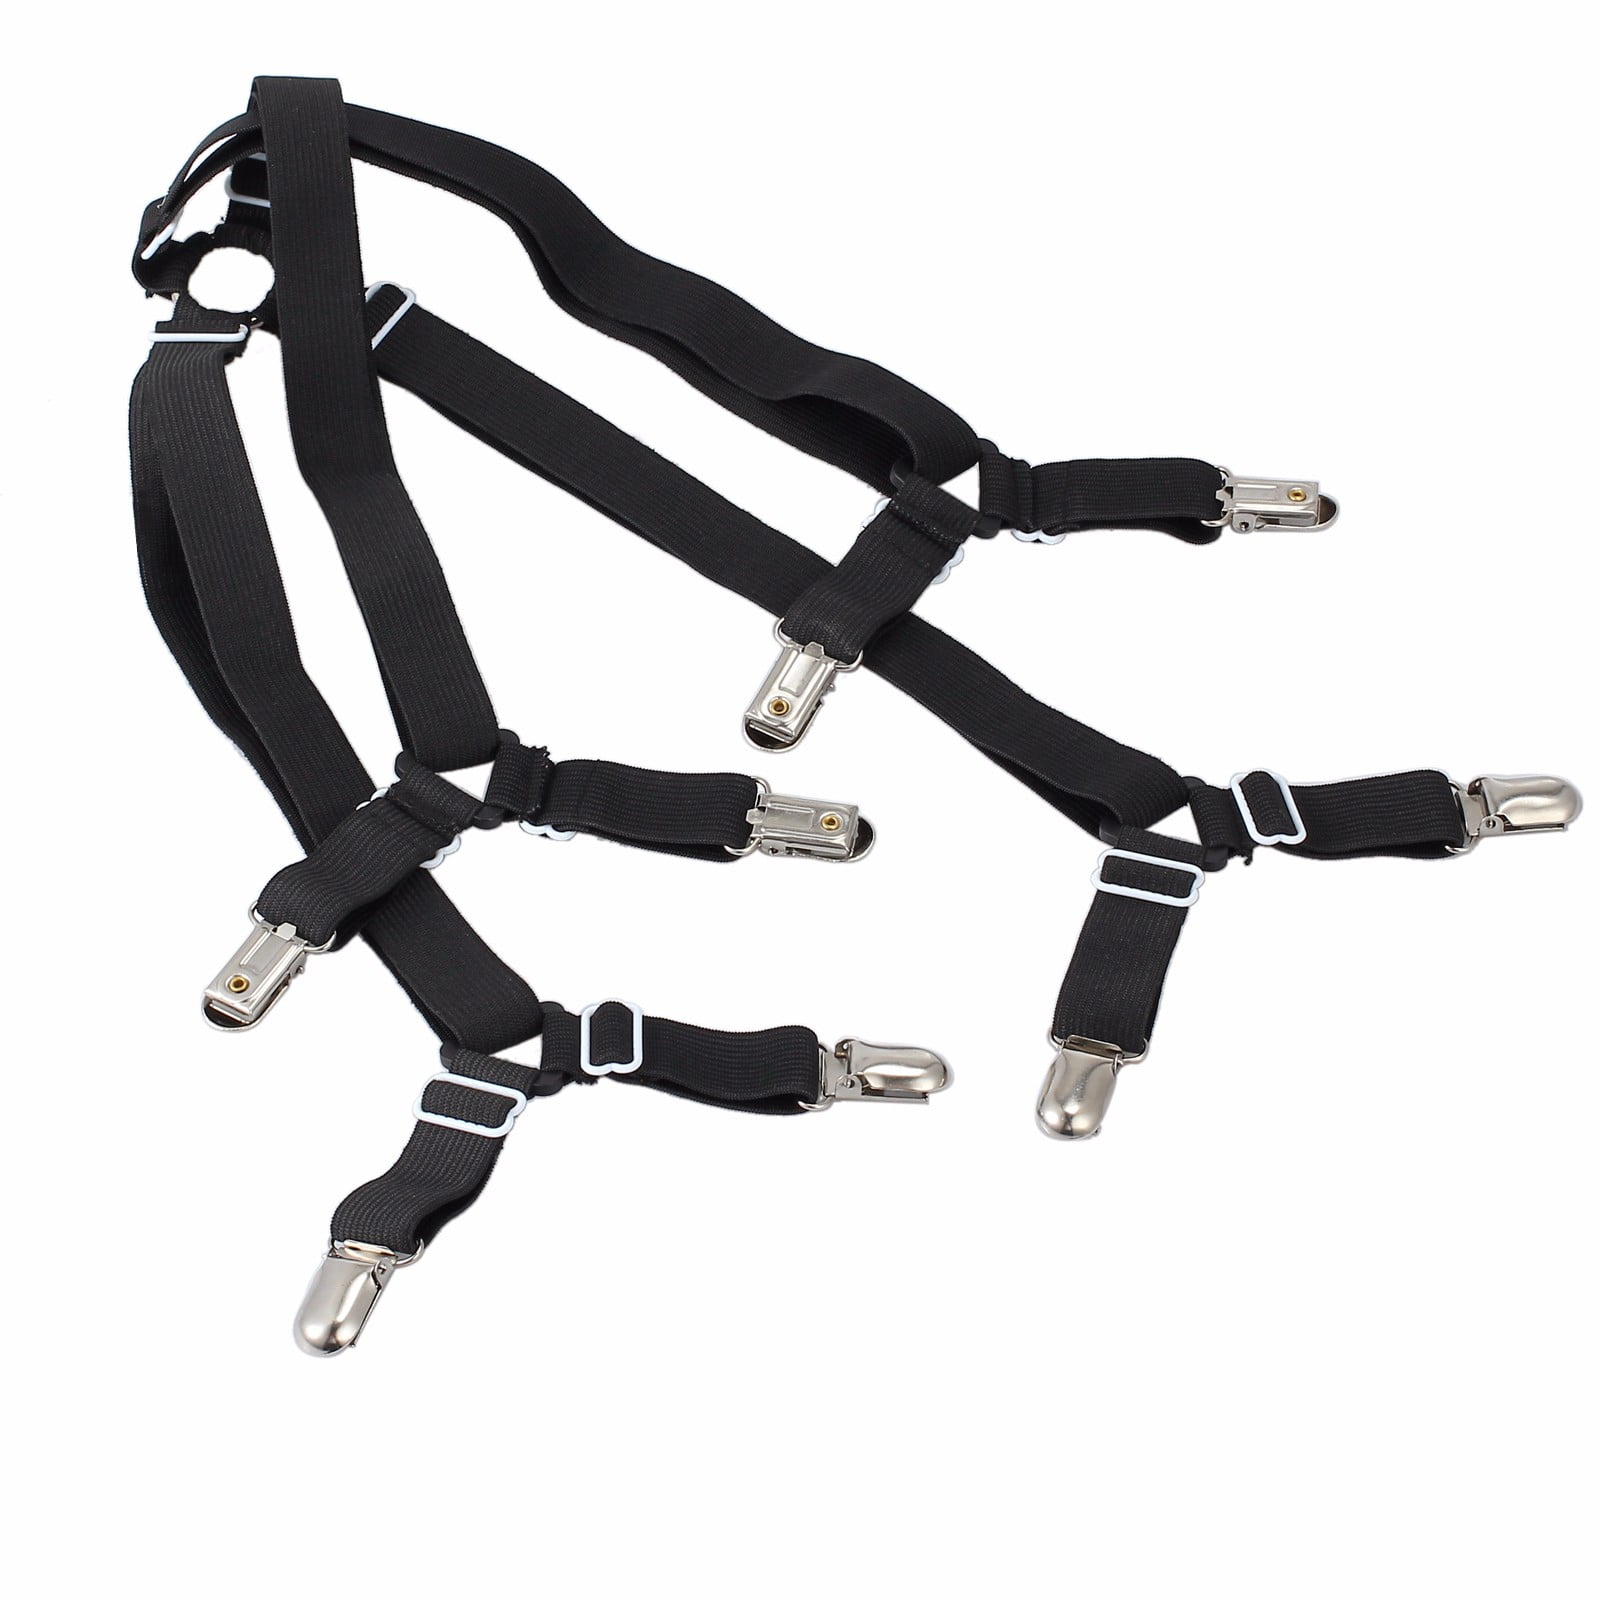 Crisscross Adjust Bed Fitted Sheet Straps Suspenders Gripper Holder Fastener EC 